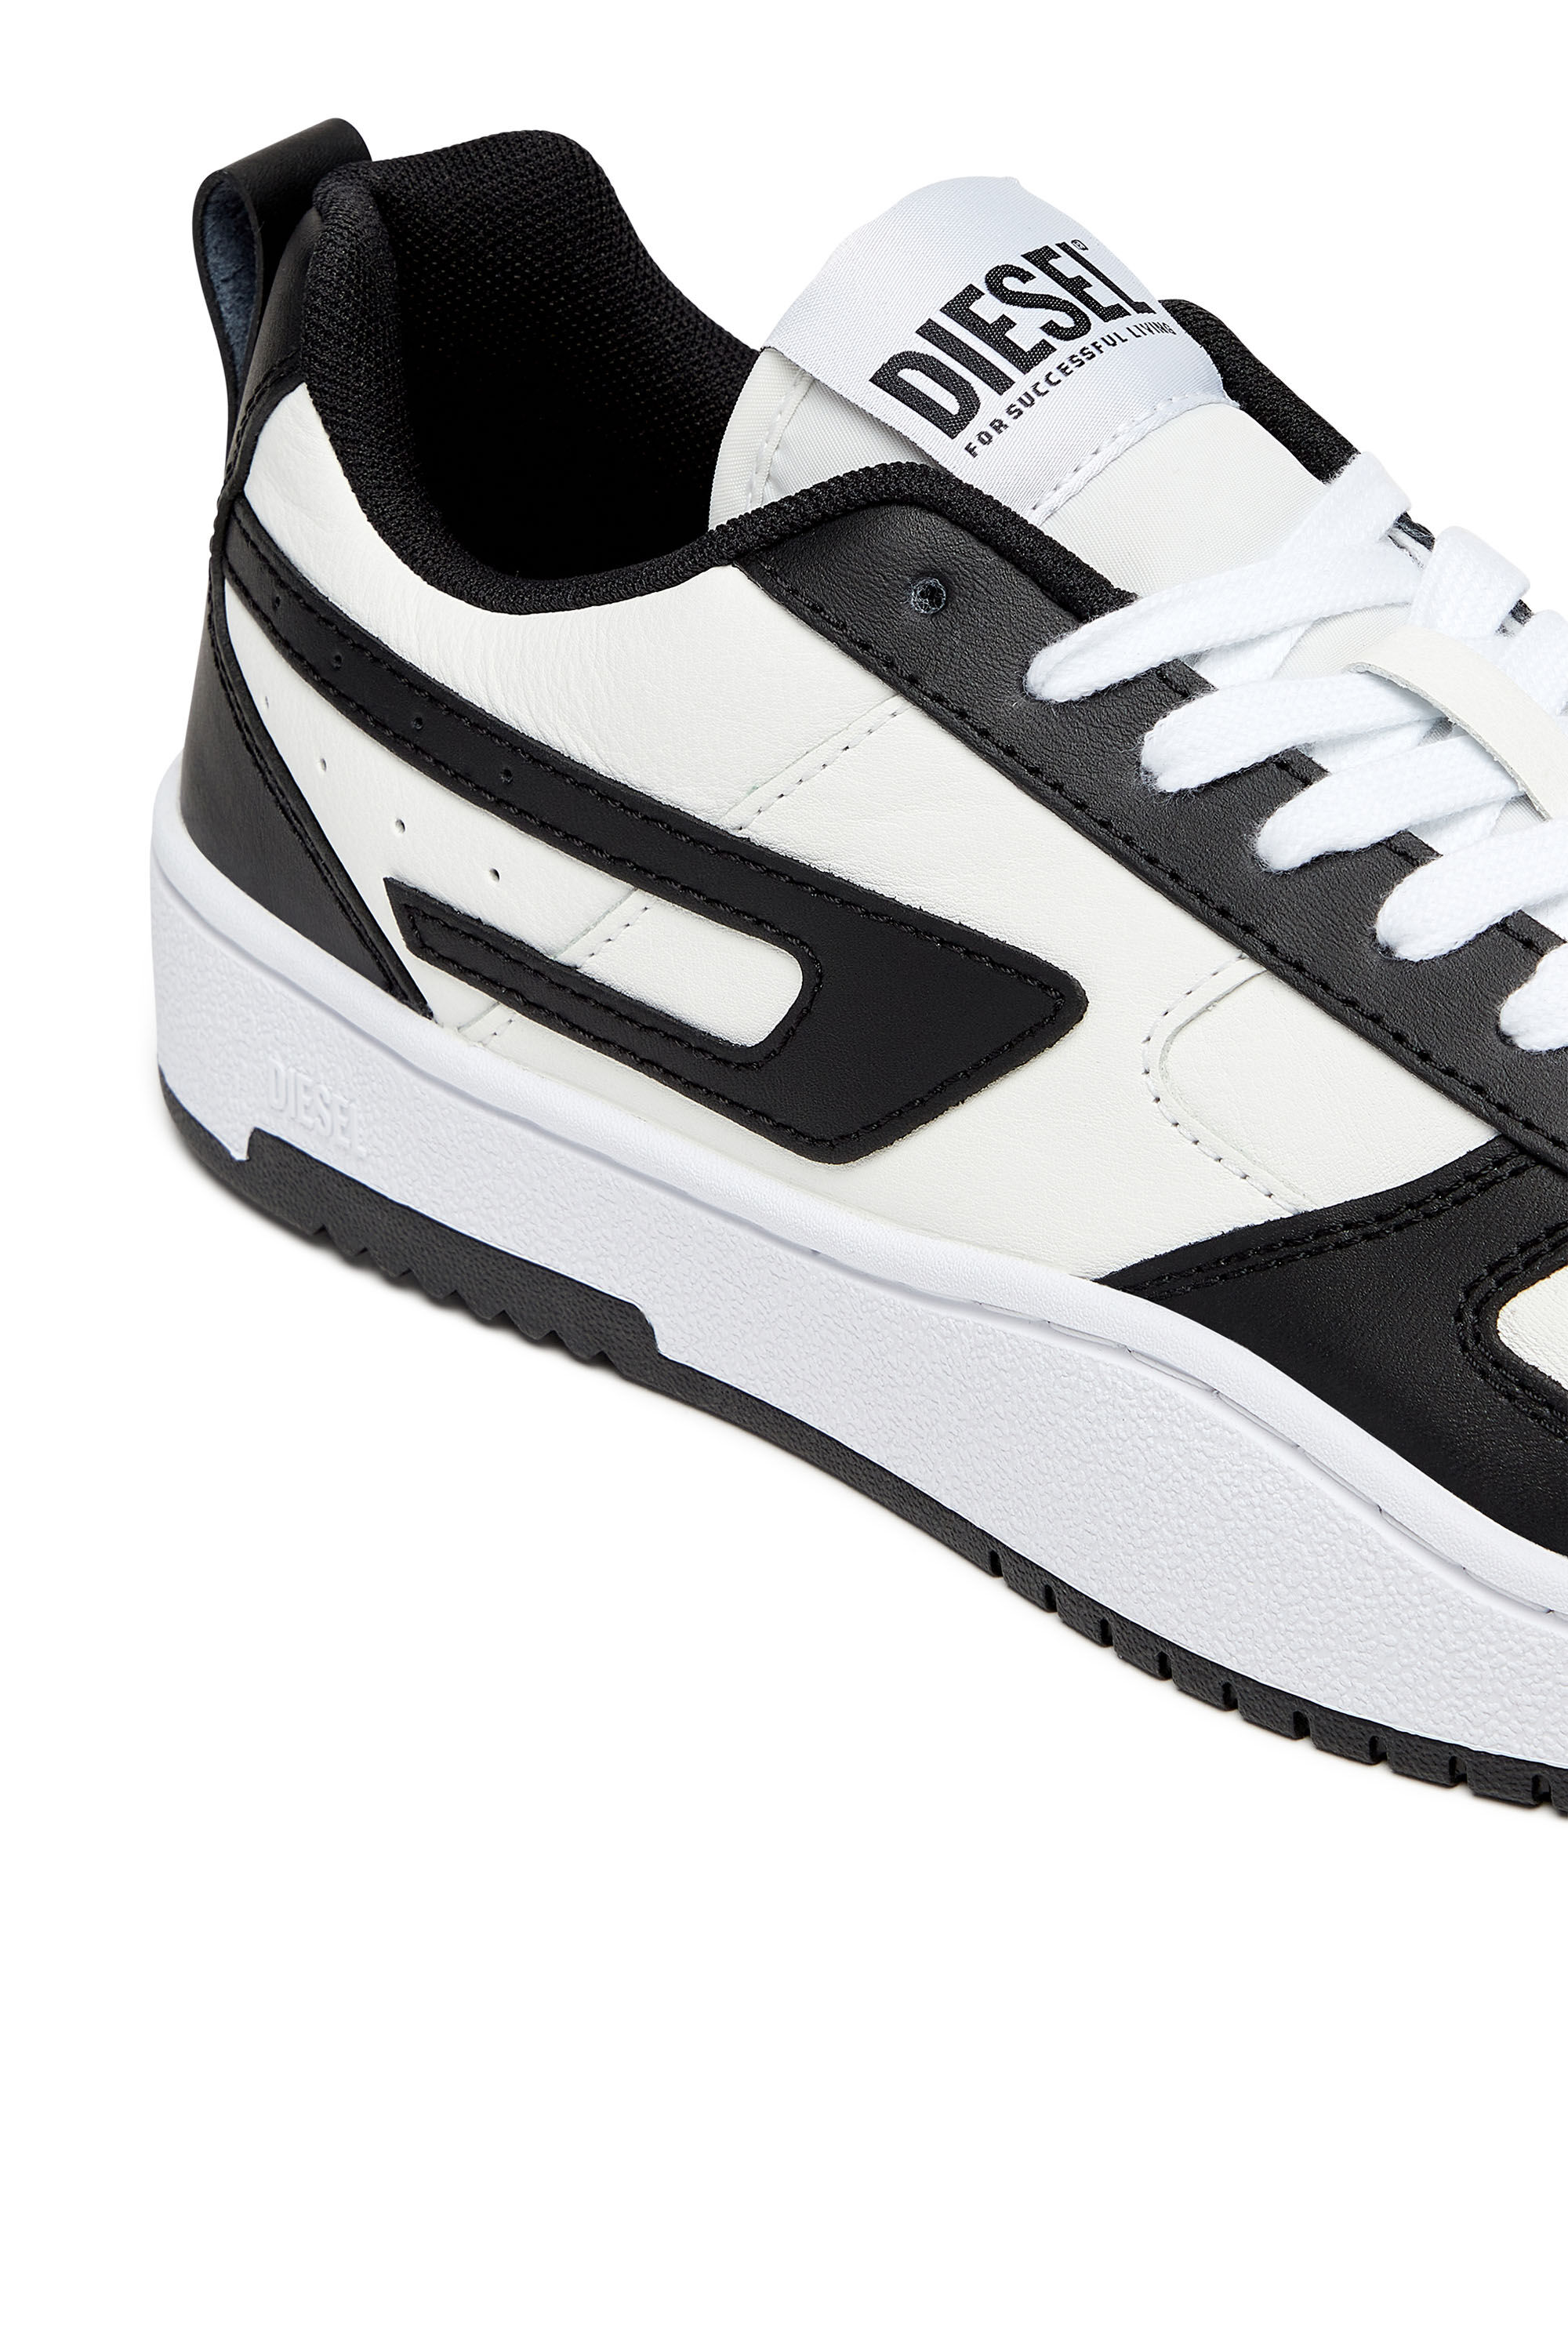  DC Shoes Zapatillas bajas para hombre, color blanco y negro,  11, Blanco Negro : Ropa, Zapatos y Joyería